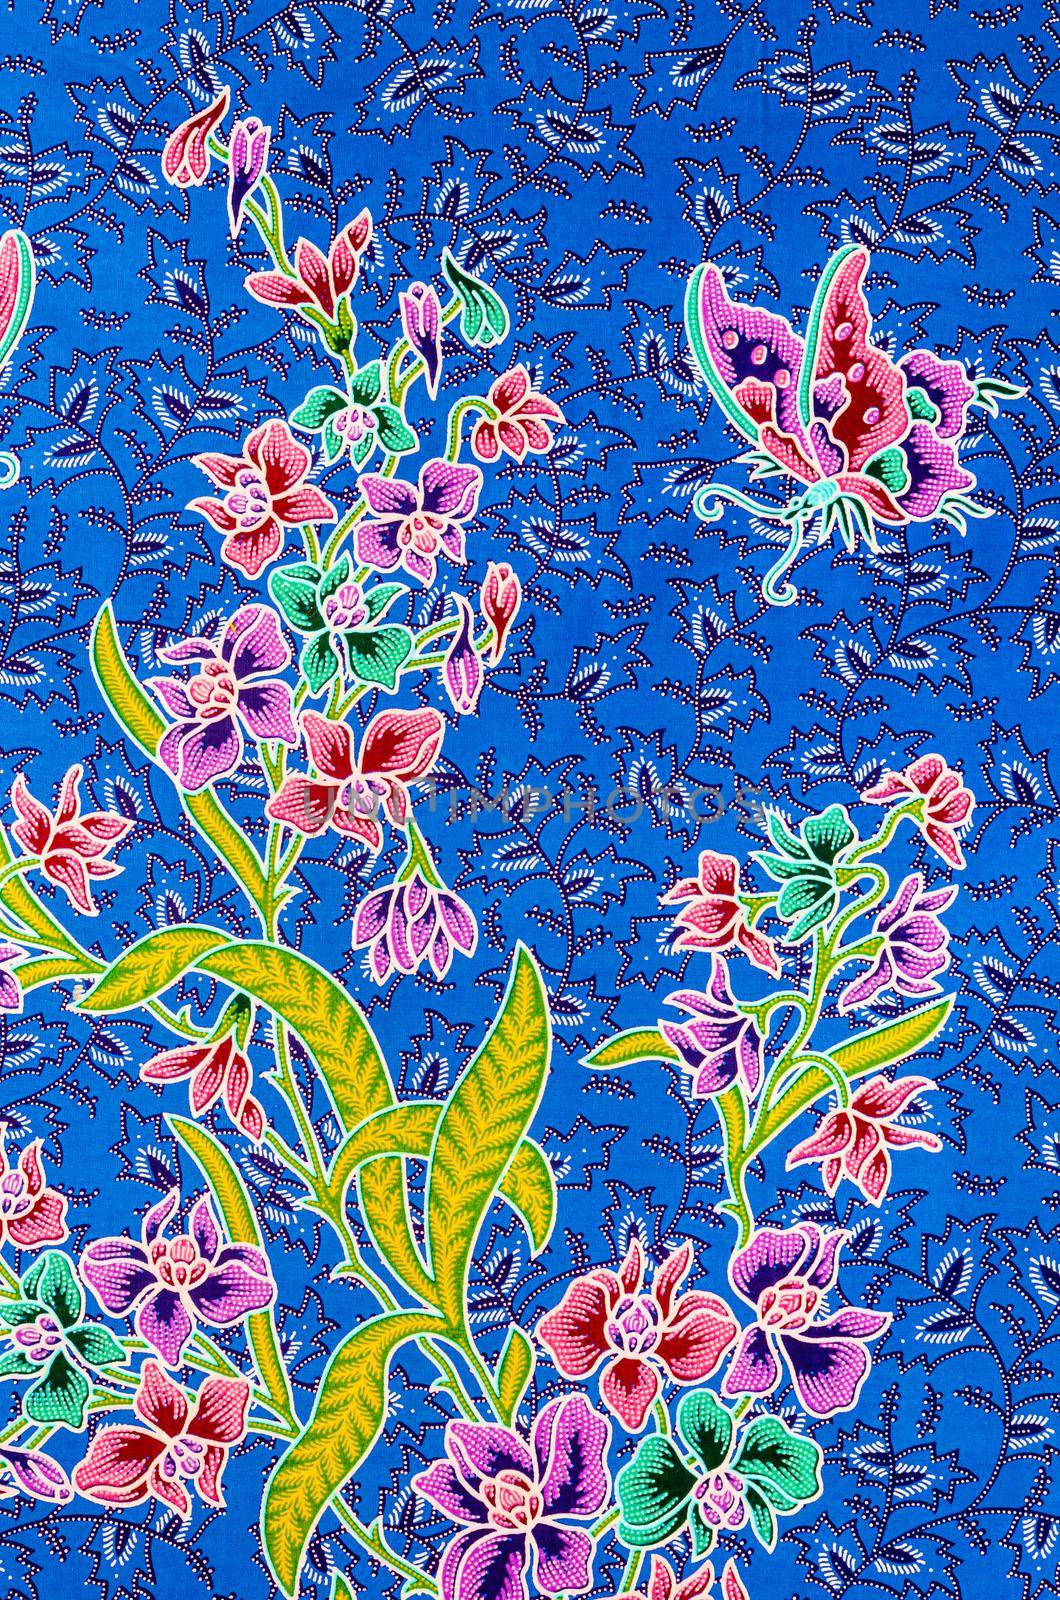 The beautiful of art Batik textile pattern. by Gamjai